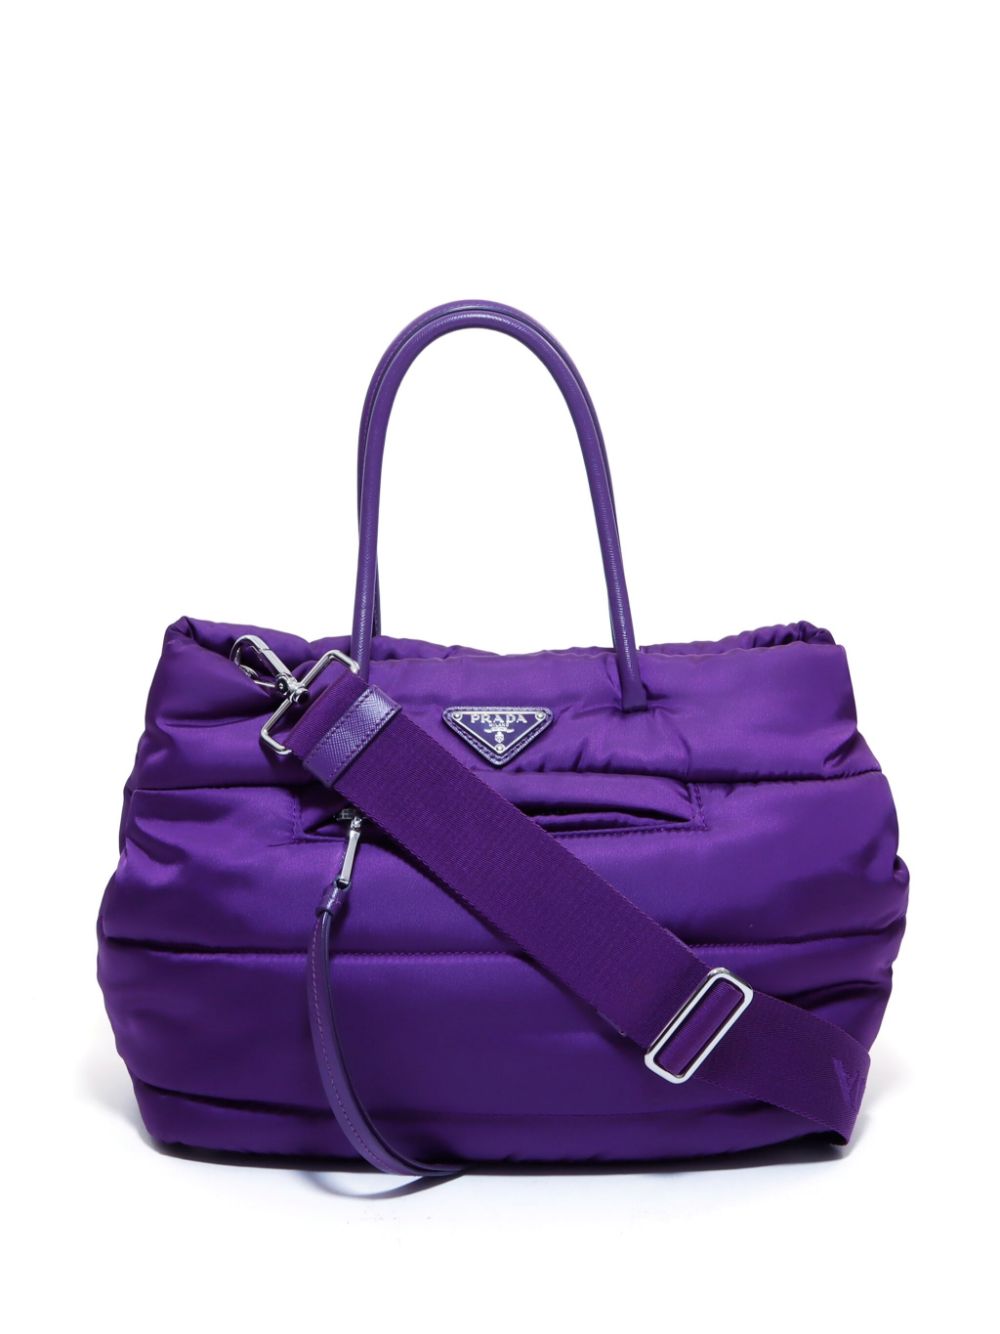 Prada Pre-Owned Handtasche mit Logo-Schild - Violett von Prada Pre-Owned